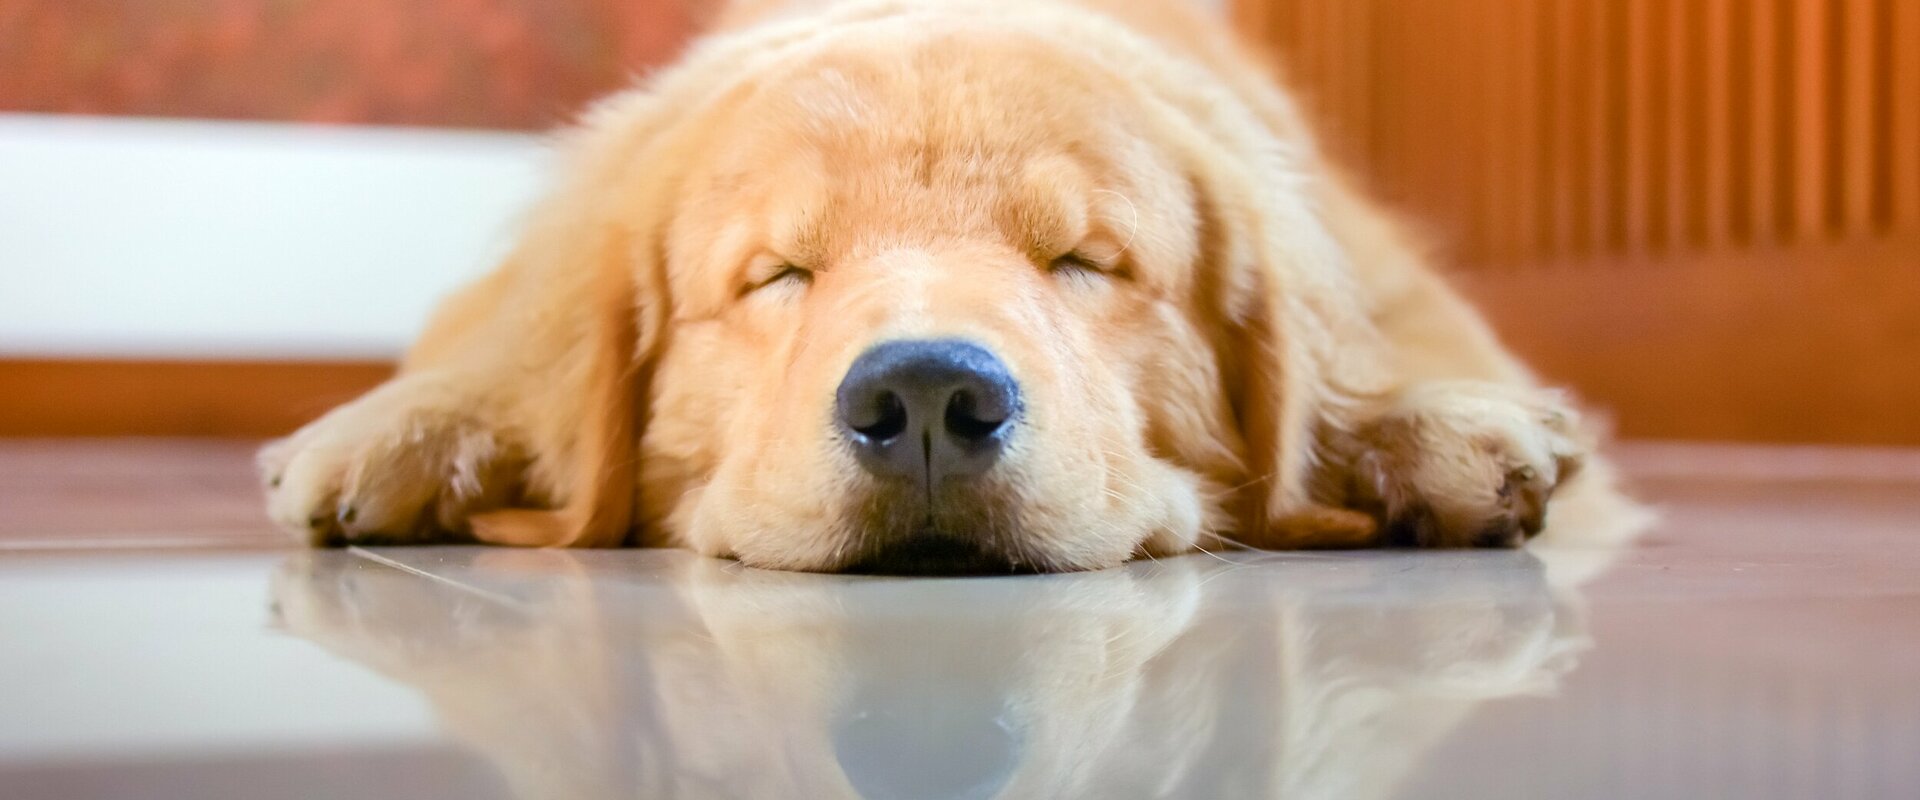 Schlafender Hund (Golden Retriever), der mit dem Kopf zum Betrachter auf einem glatten Boden liegt und sich in dessen Oberfläche spiegelte 